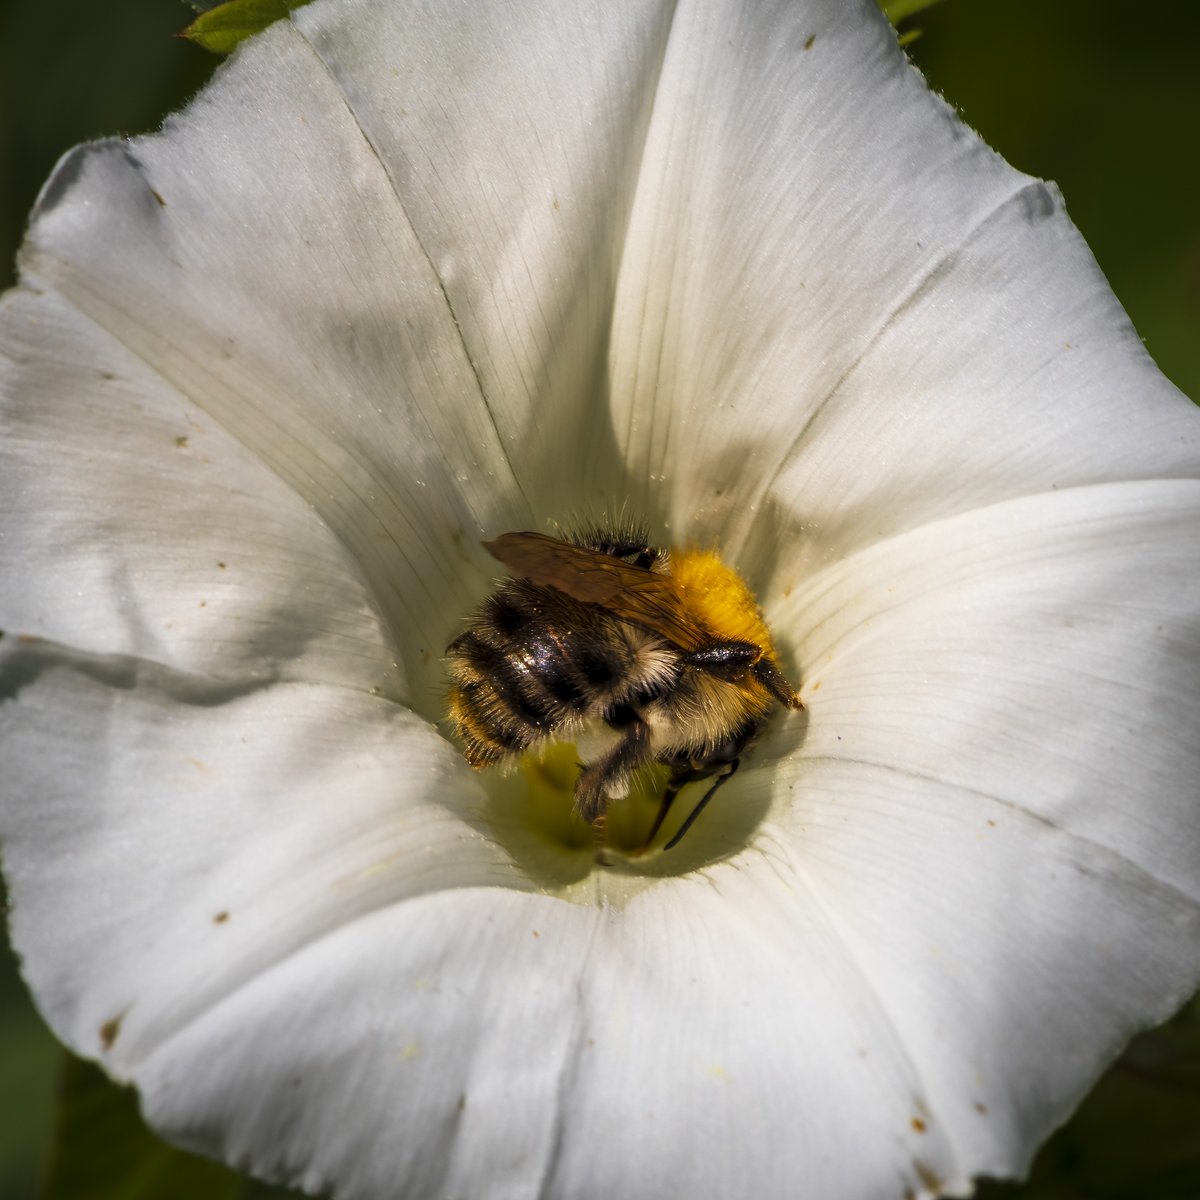 Harvesting bee 
#macro #macrophotography #canon80d #canondeutschland #mycanonstory #nature
#naturephotography #springtime #bee #bees #nature #naturephotography
#insekten #insects #honey #harvester #frühling #biene #bienen #rettetdiebienen #macroworld #savethebees